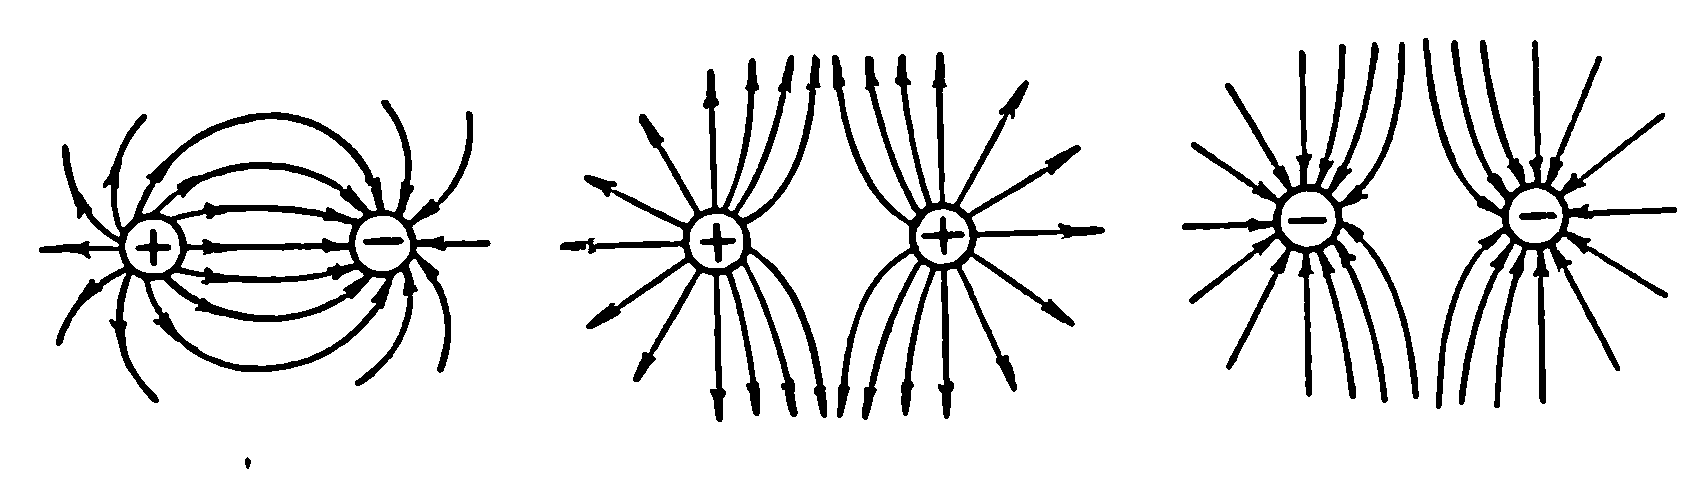 Изобразить линии напряженности и зарядов. Электрическое поле 2 разноименных зарядов. Силовые линии разноименных зарядо. Электрическое поле двух точечных разноименных зарядов изображается. Силовые линии электрического поля разноименных зарядов.